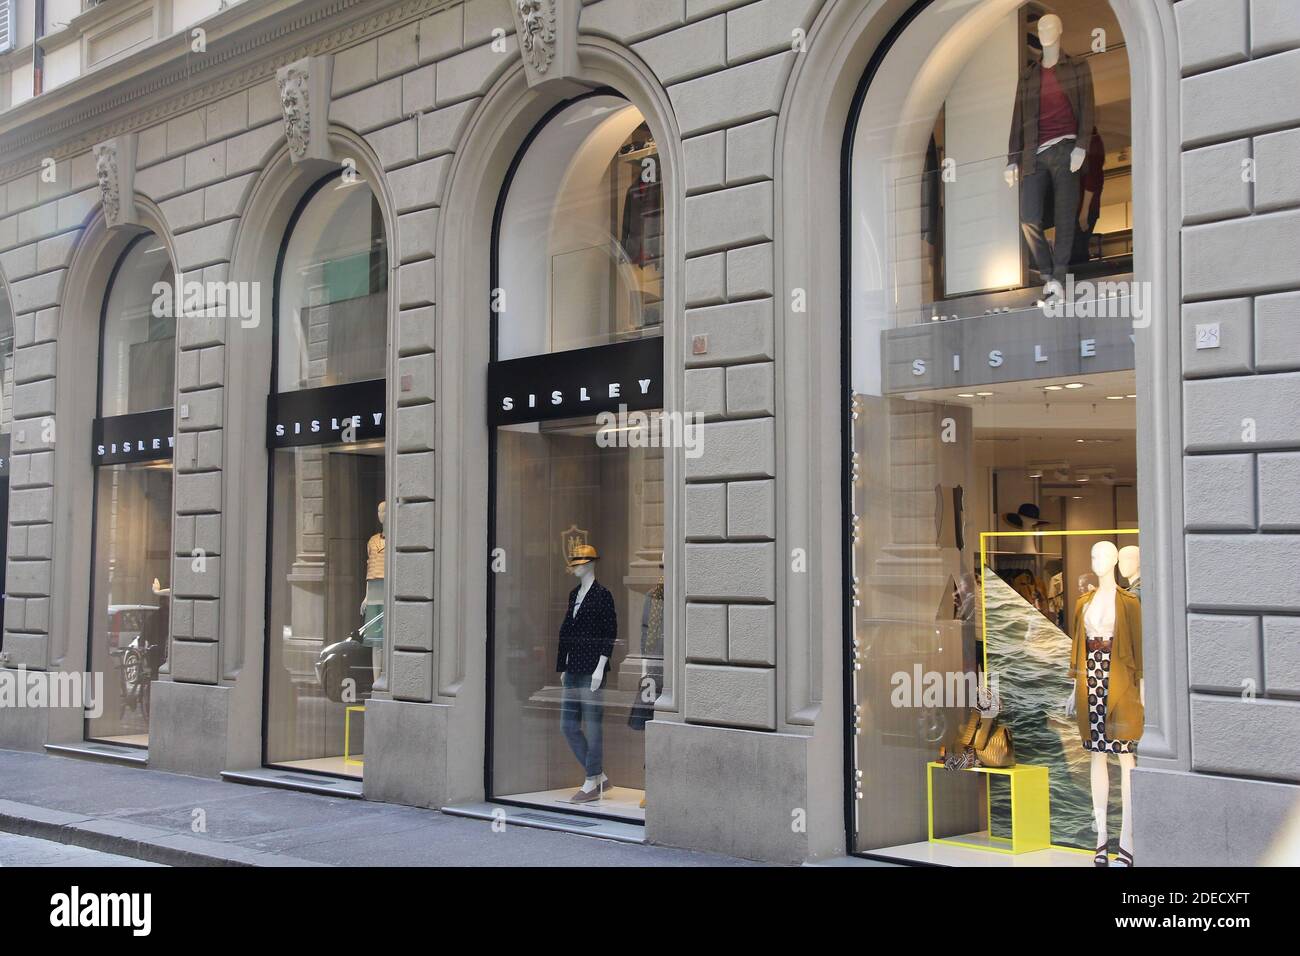 FLORENCIA, ITALIA - 30 DE ABRIL de 2015: Tienda de moda Sisley en  Florencia. Sisley es propiedad de Benetton Group, compañía italiana de moda  Fotografía de stock - Alamy